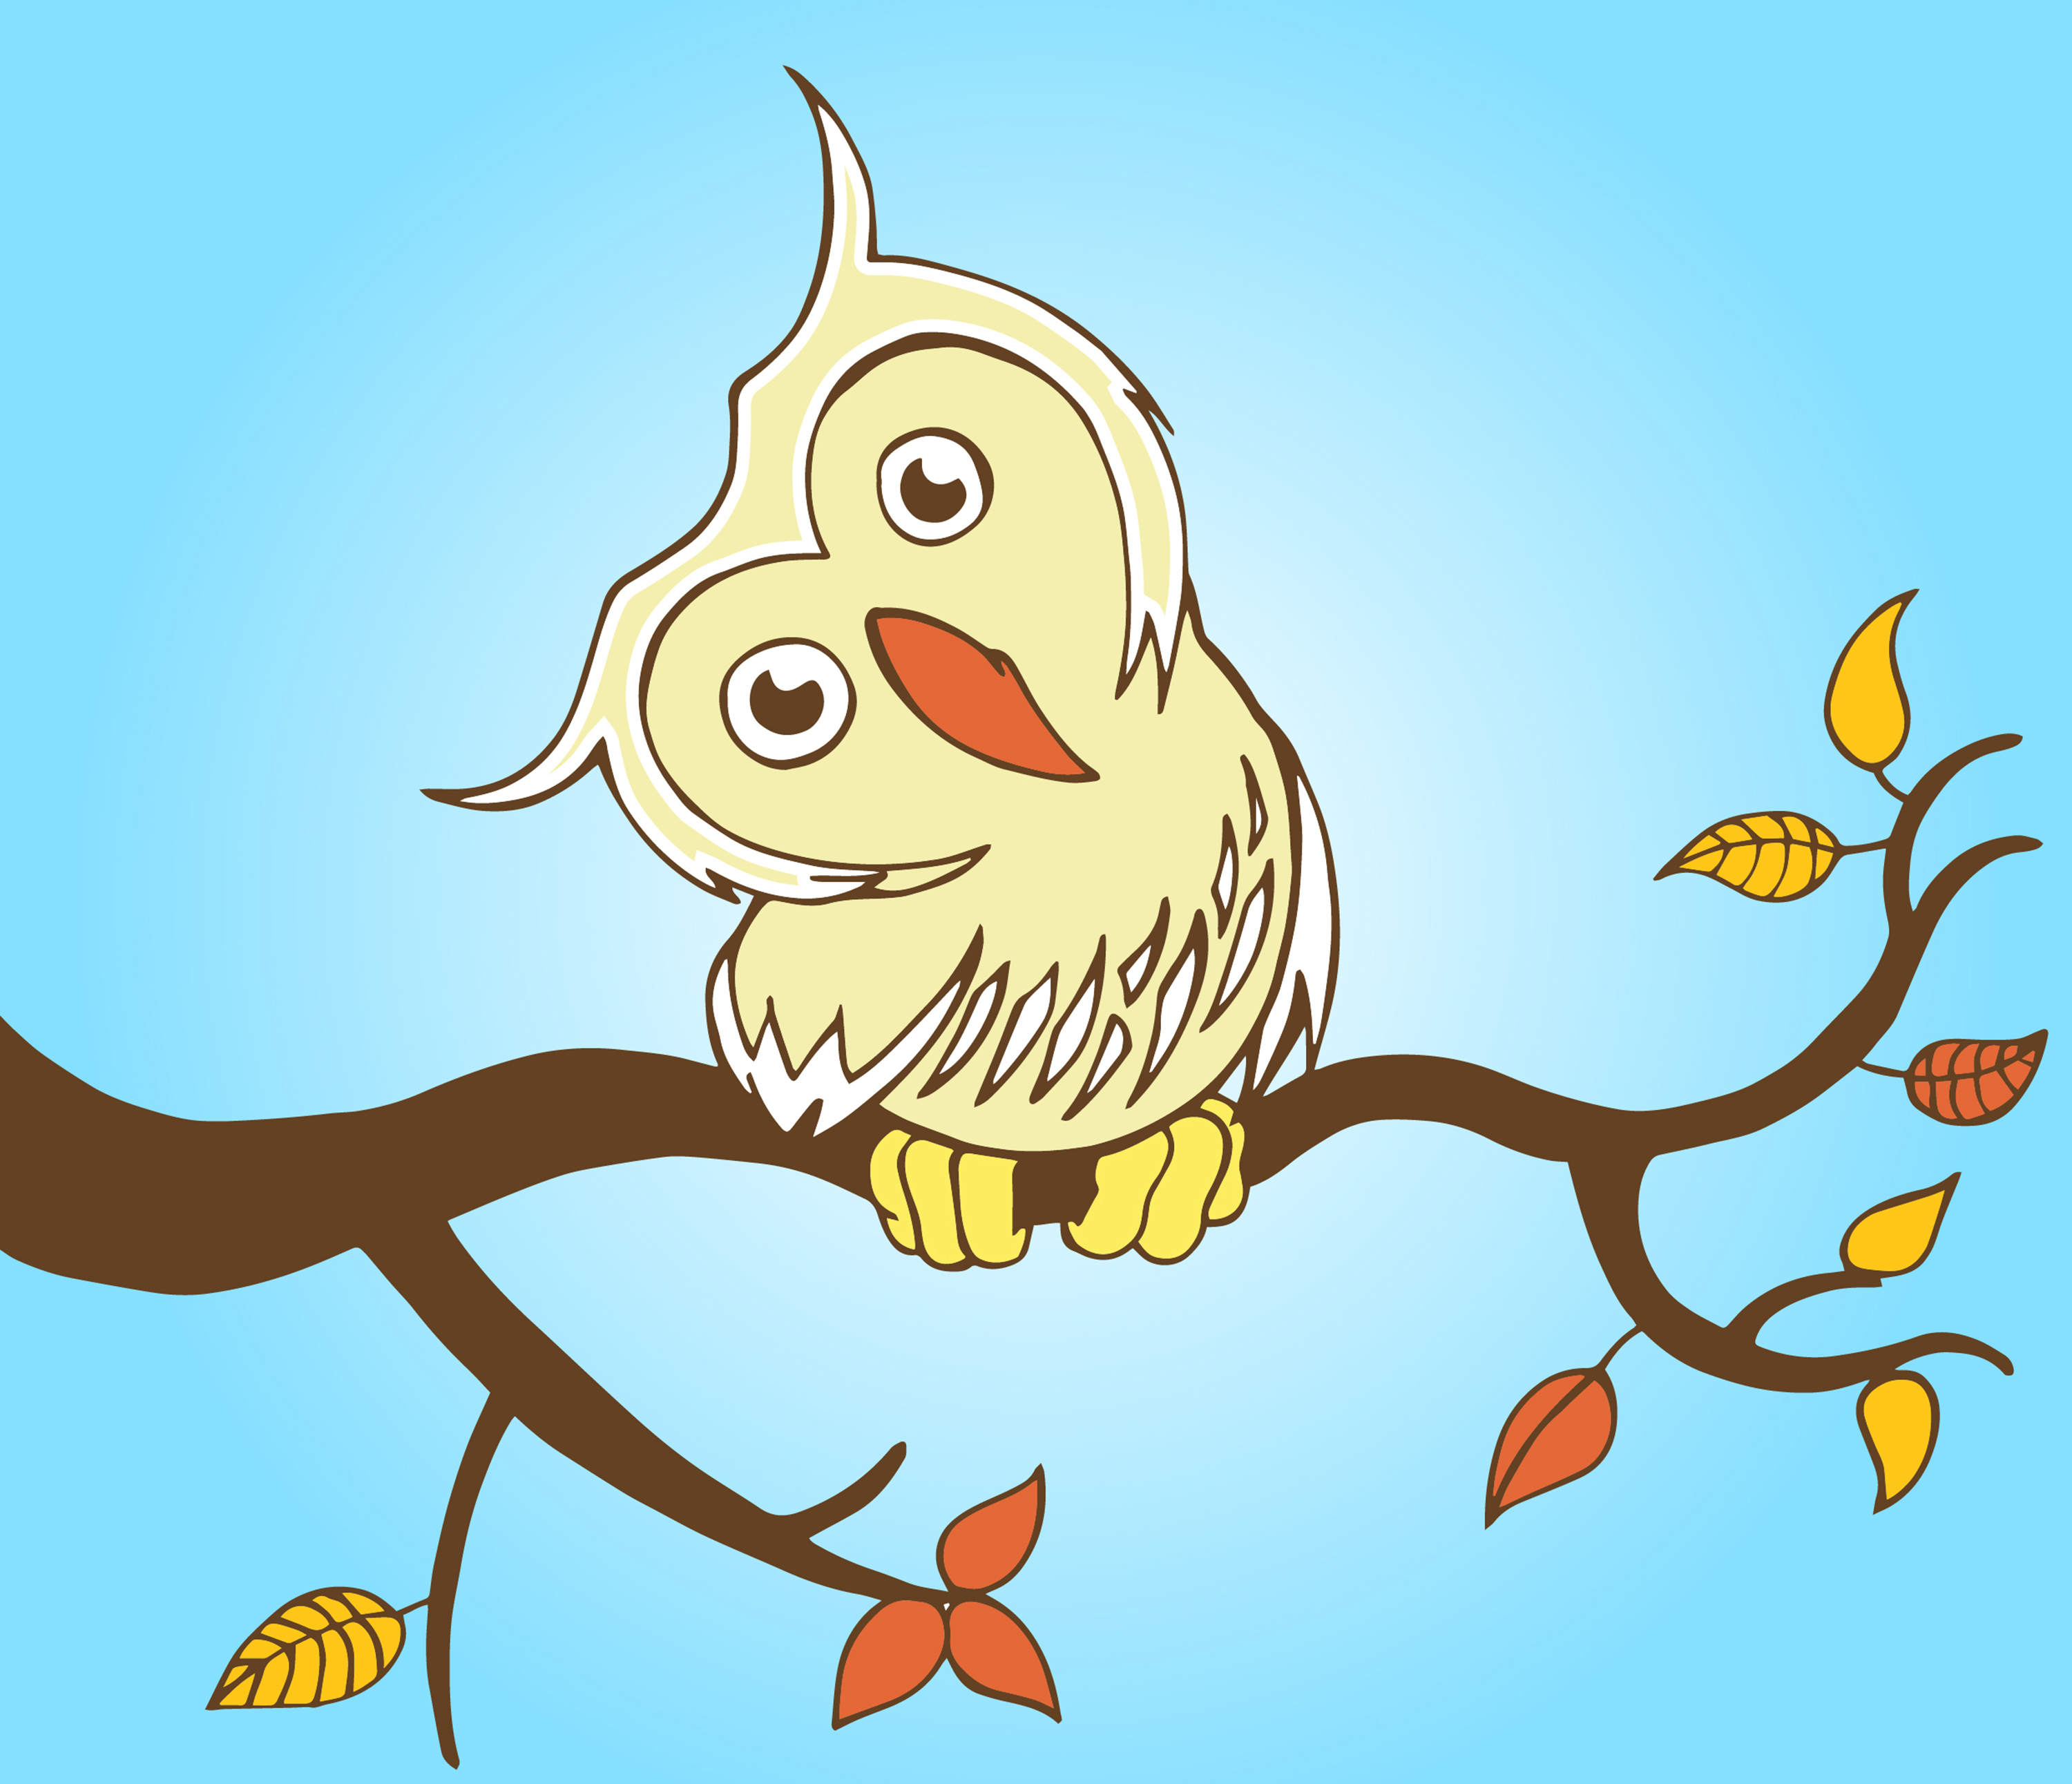 Nursery - Owl2.1 Nursery Illustrations